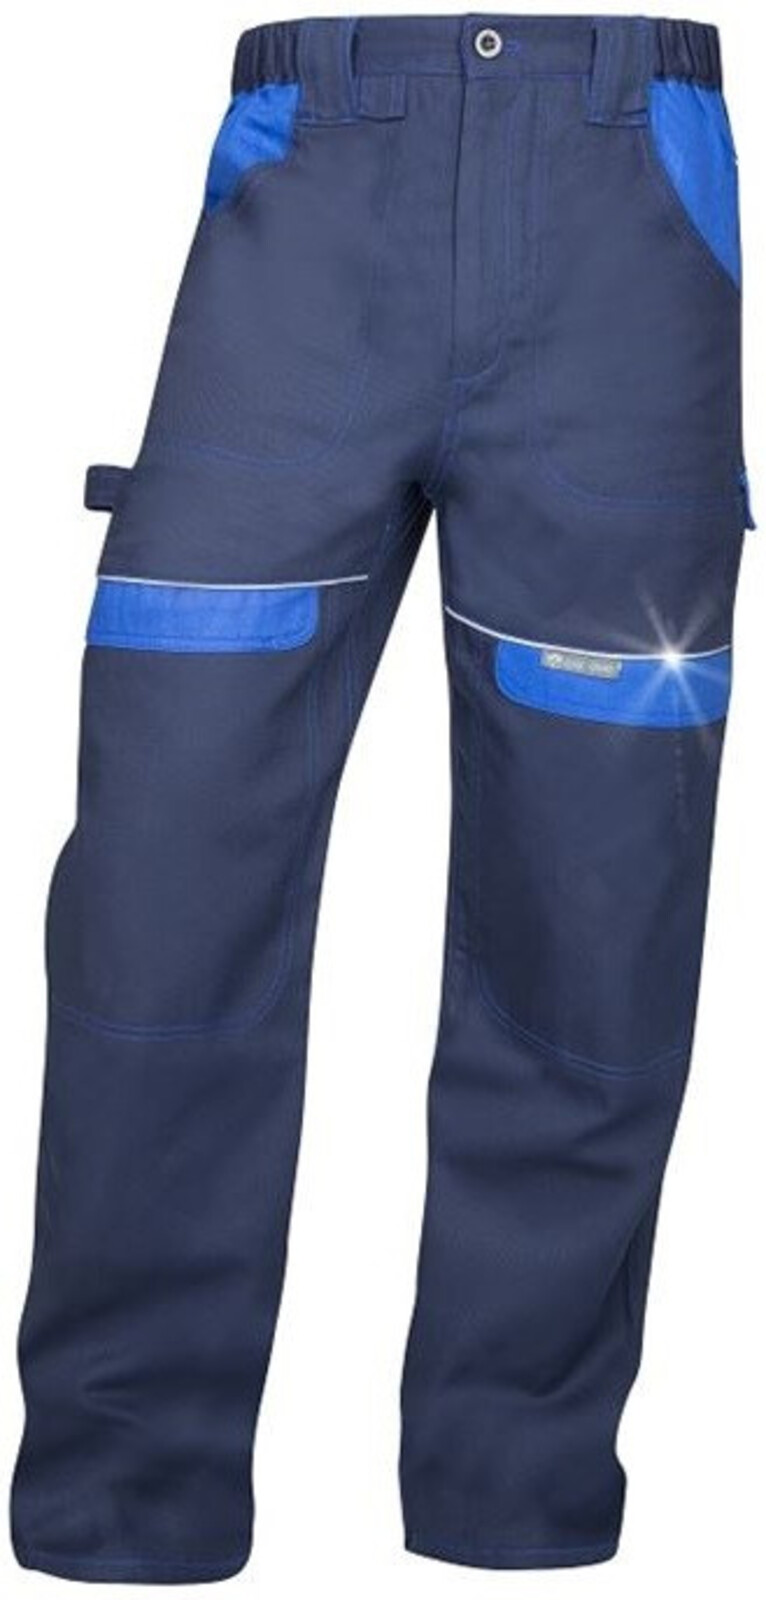 Pánske montérkové nohavice do pása Ardon Cool Trend - veľkosť: 44, farba: tmavomodrá/svetlomodrá